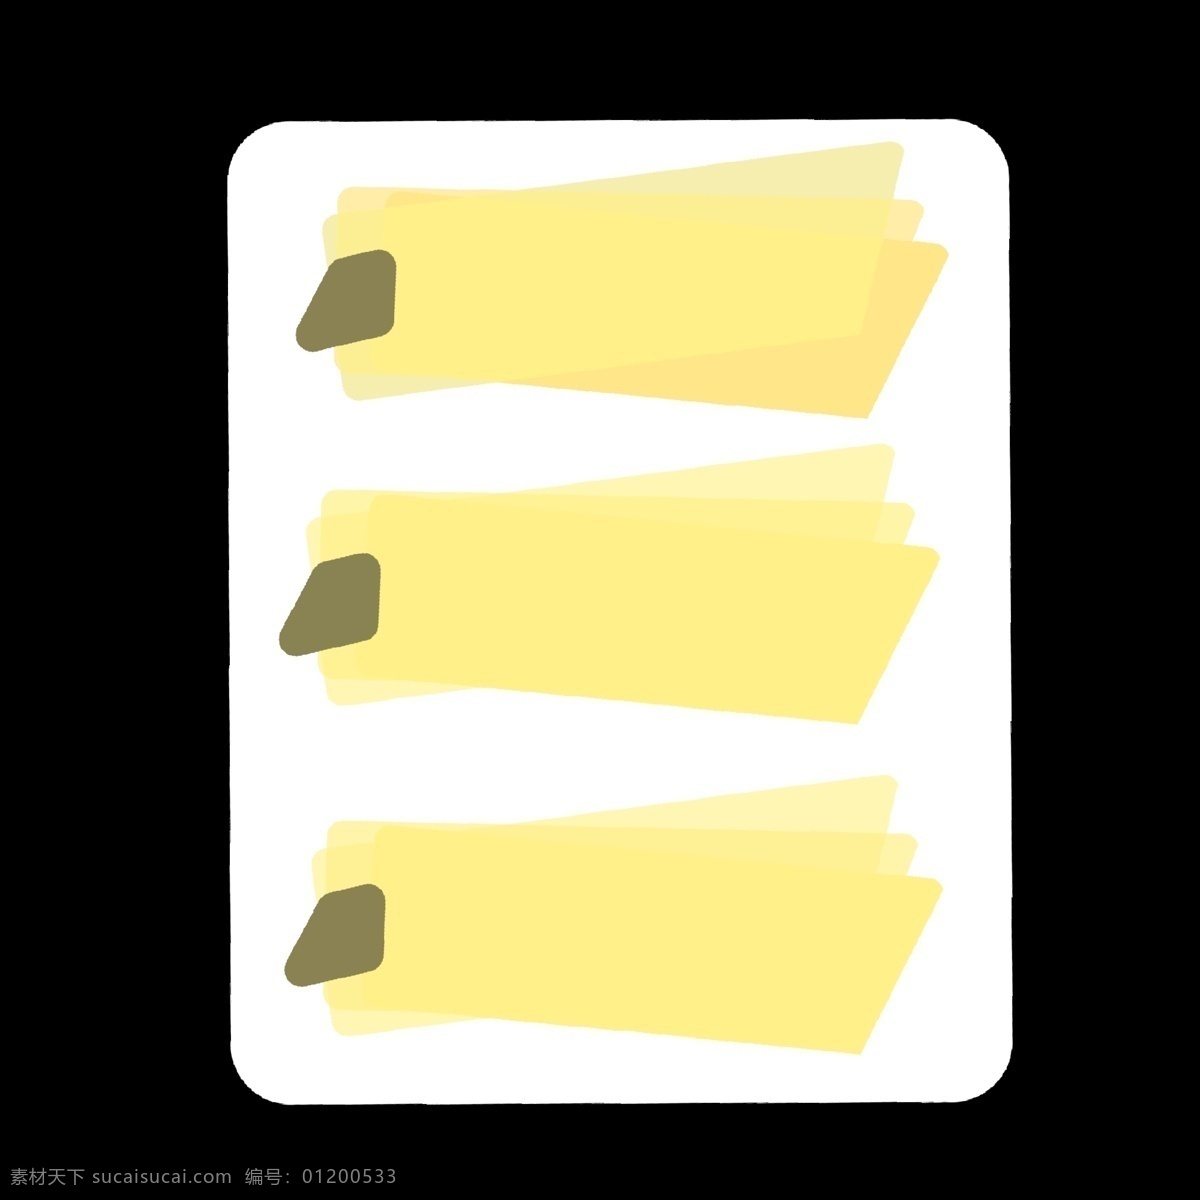 黄色 便签 条 分类 图标 便签条 分别 类目表 不同 区别 区分开 ppt专用 卡通 简单 简约 简洁